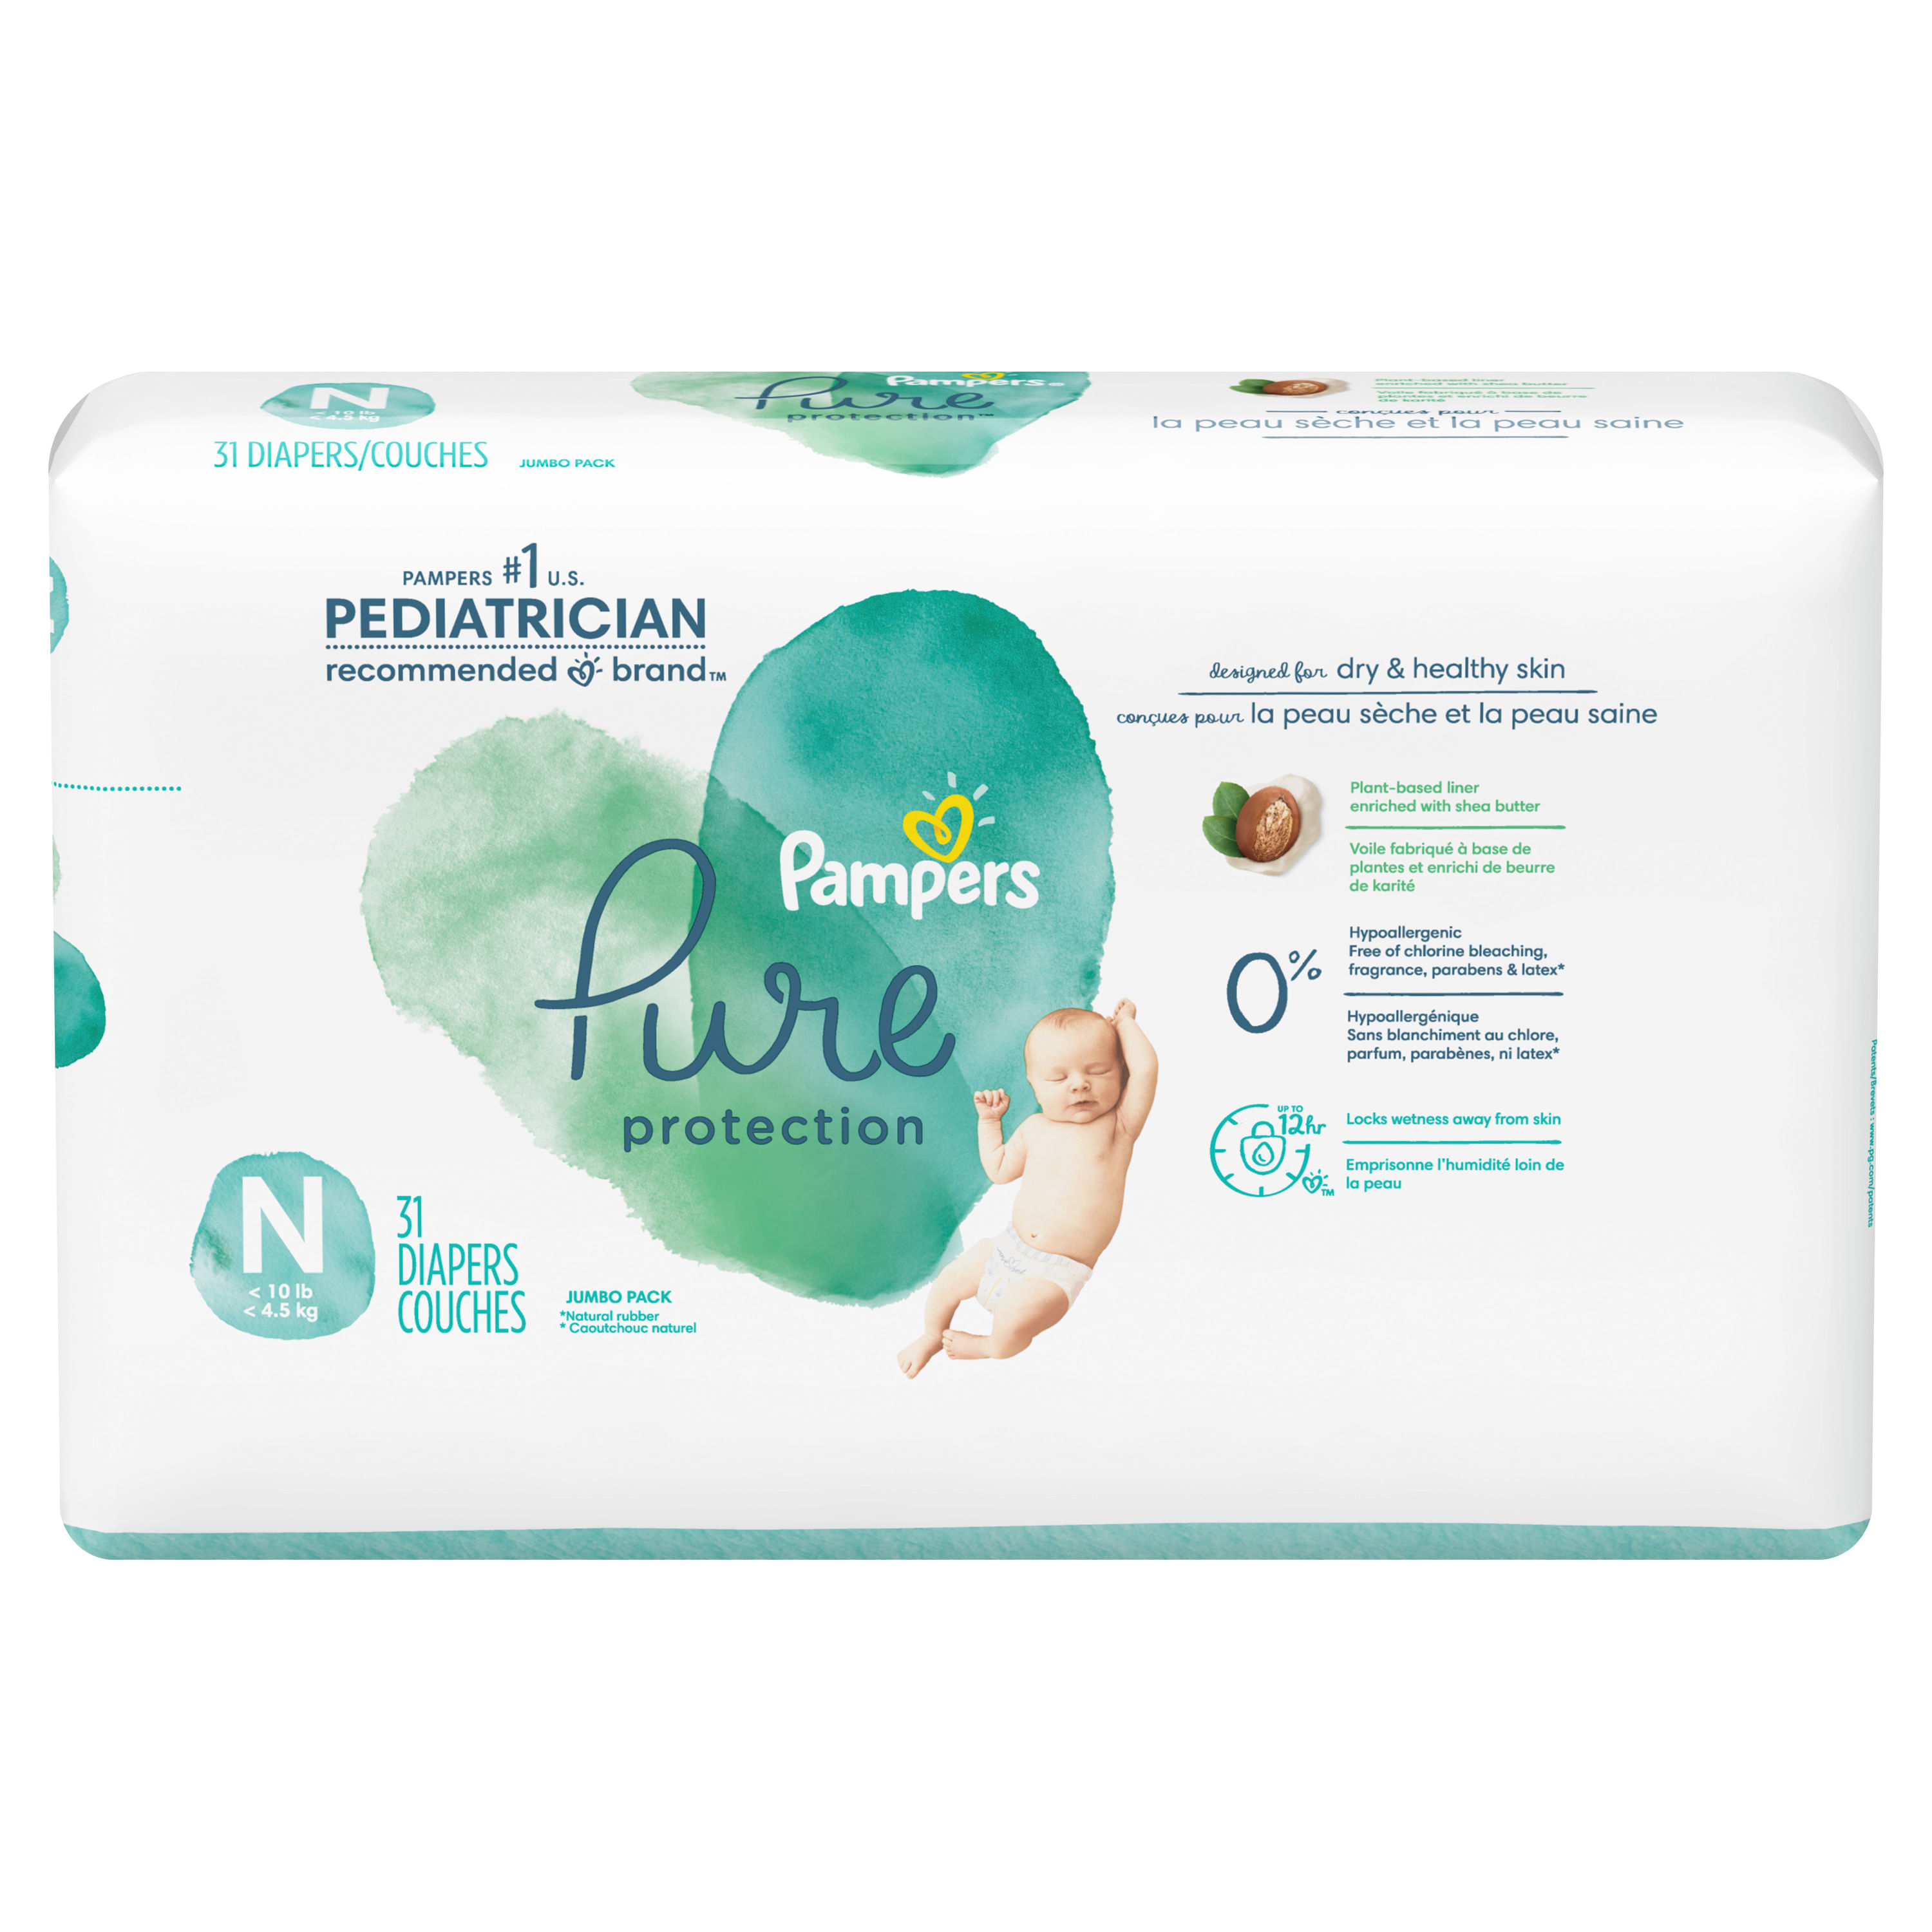 Pampers Pure Protection - Pañales desechables para bebé, talla 7,  suministro de 2 meses (2 x 88 unidades) con toallitas Aqua Pure para bebé,  12